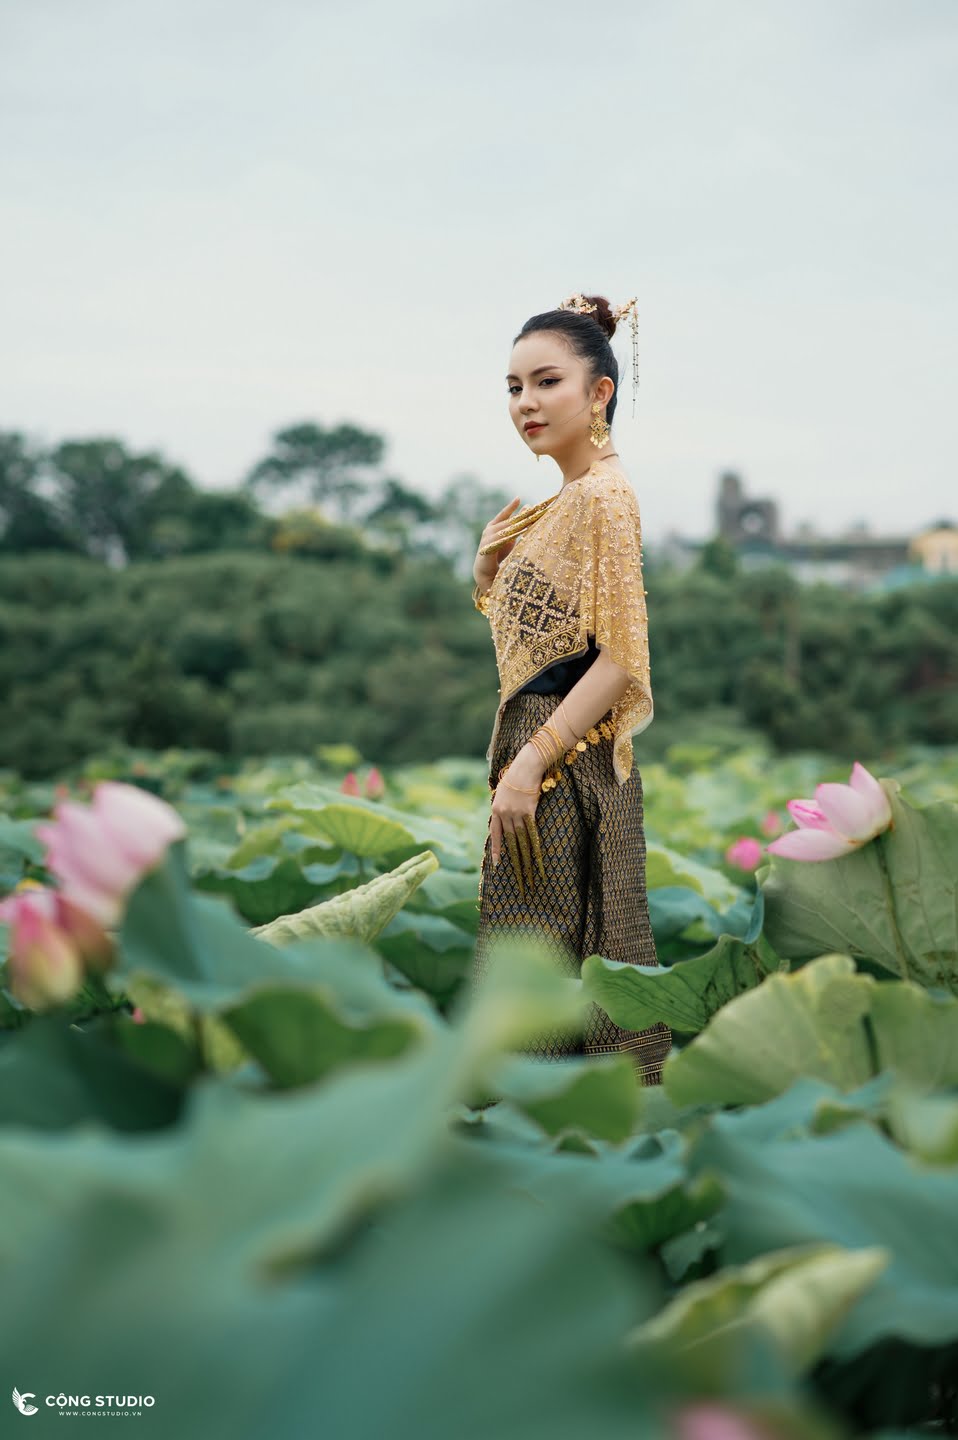 Chụp ảnh sen hồ tây concept thái lan đẹp, chuyên nghiệp, giá rẻ (21)